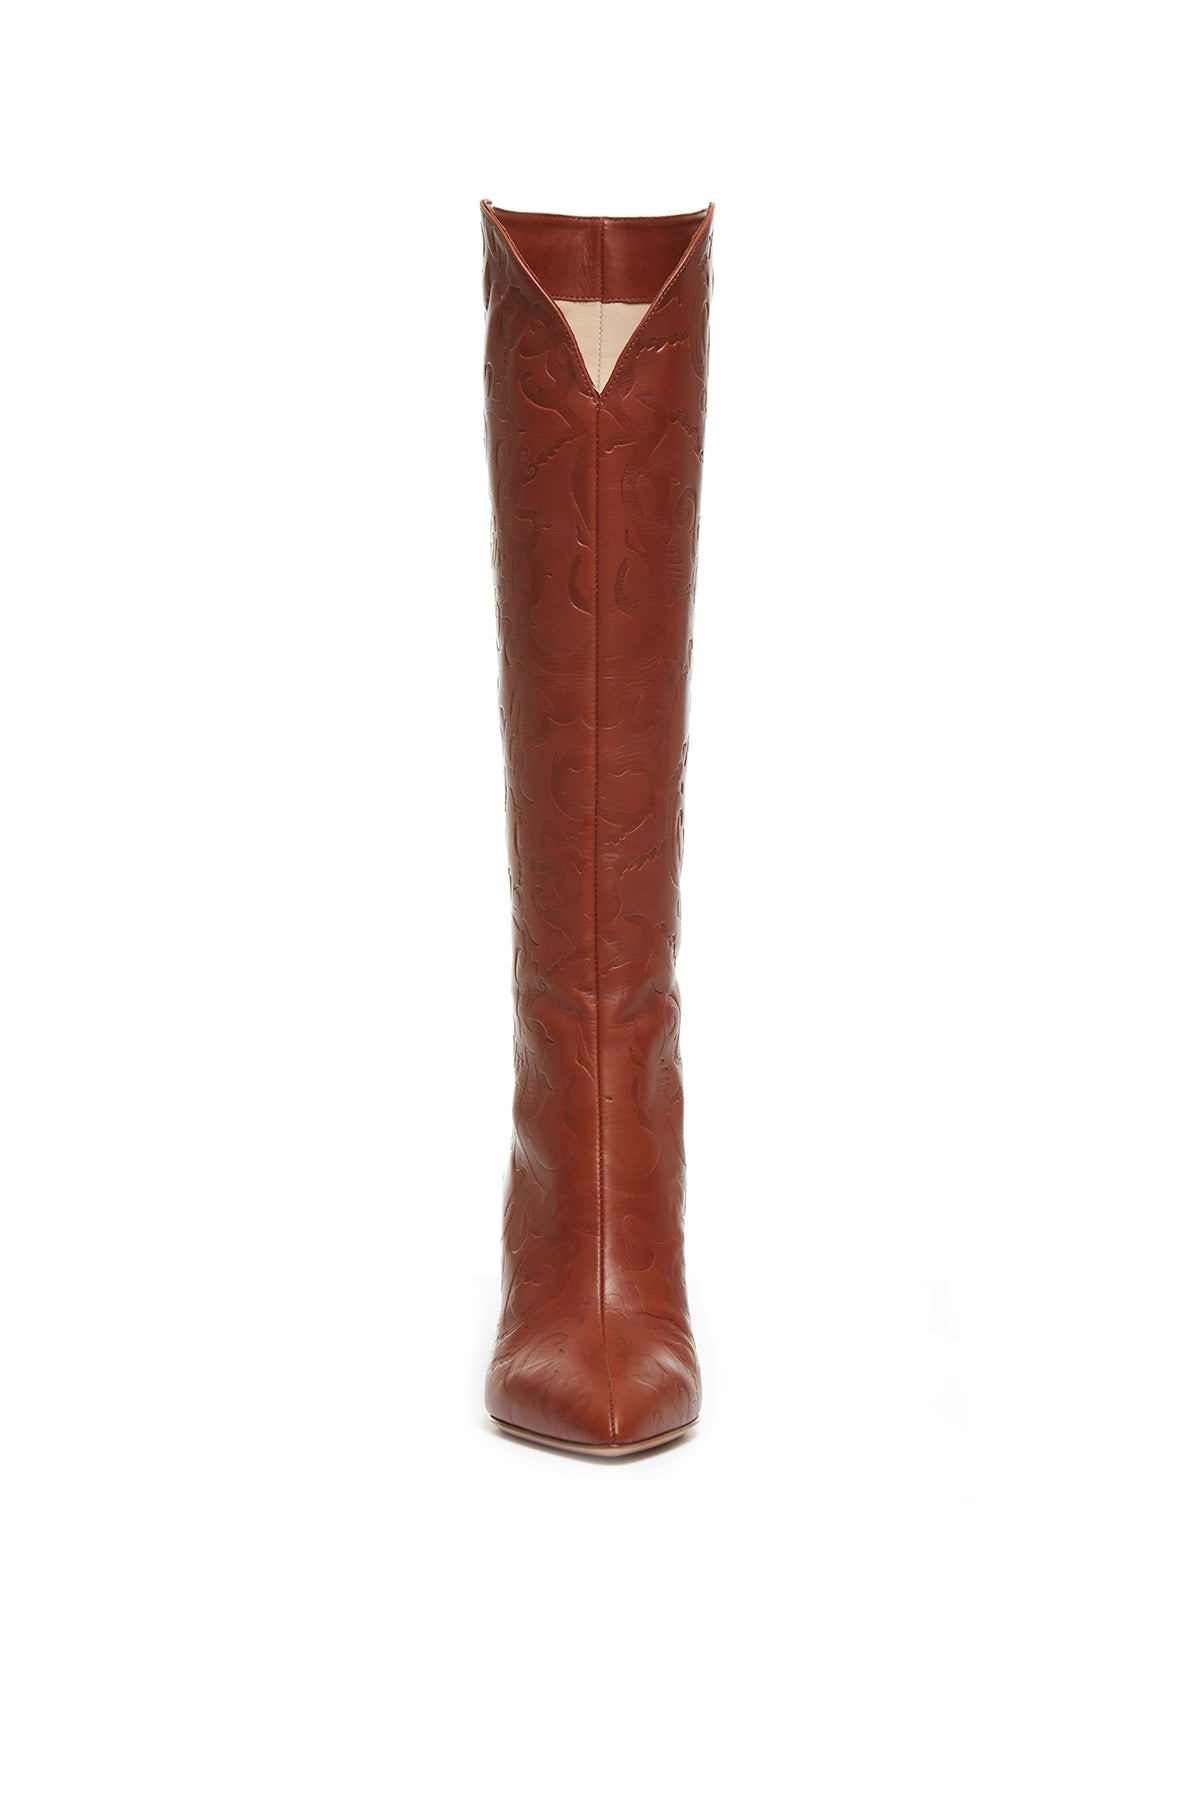 Debossed Knee-High Cora Boots in Cognac Leather - 4